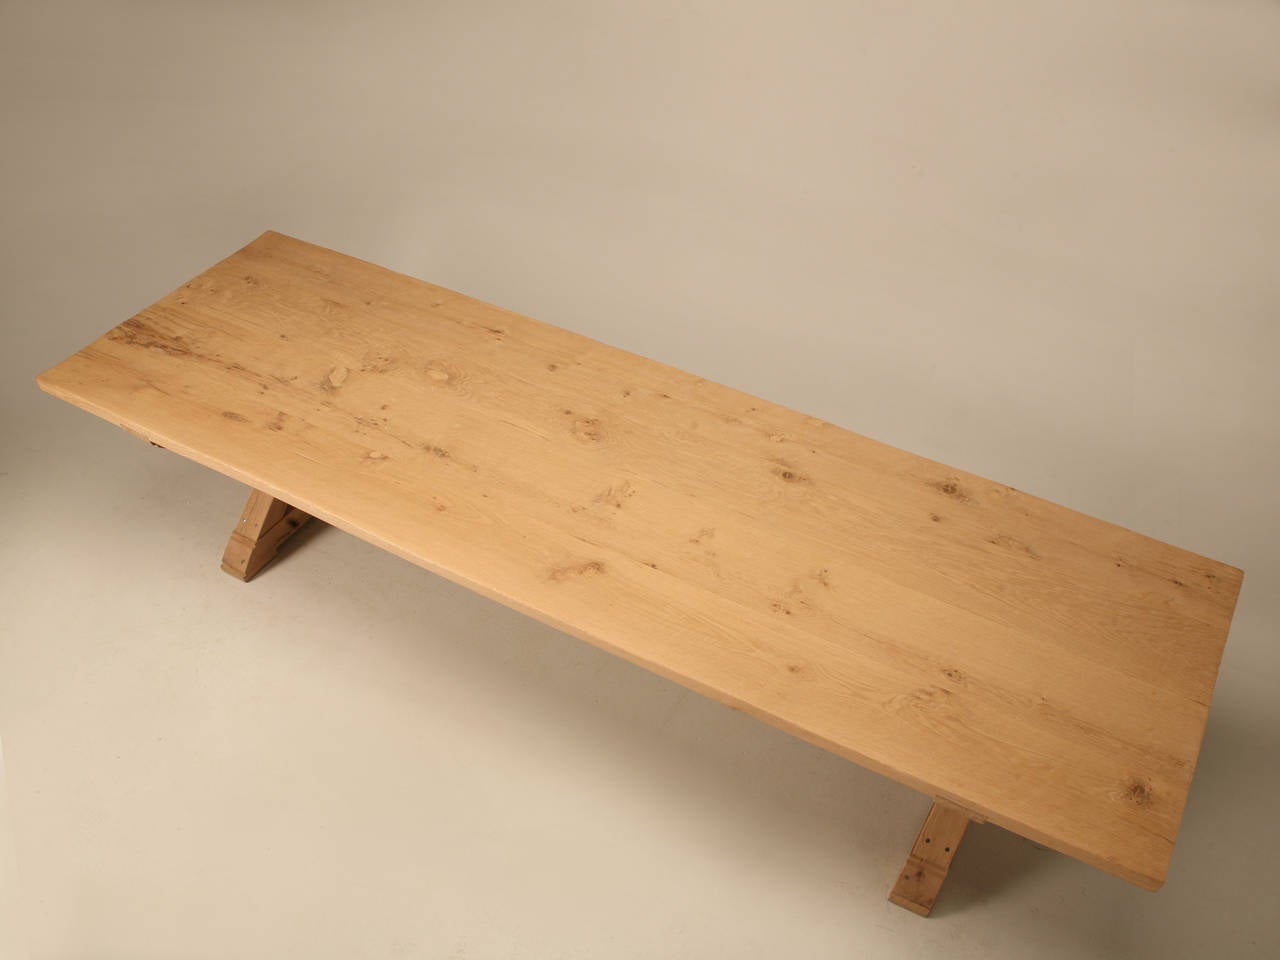 Il s'agit d'une copie authentique d'une table de ferme française des années 1700 que nous produisons dans notre atelier Old Plank ici à Chicago. Le bois utilisé pour le plateau est du chêne blanc récupéré, âgé en moyenne de 50 à 100 ans. Tout le